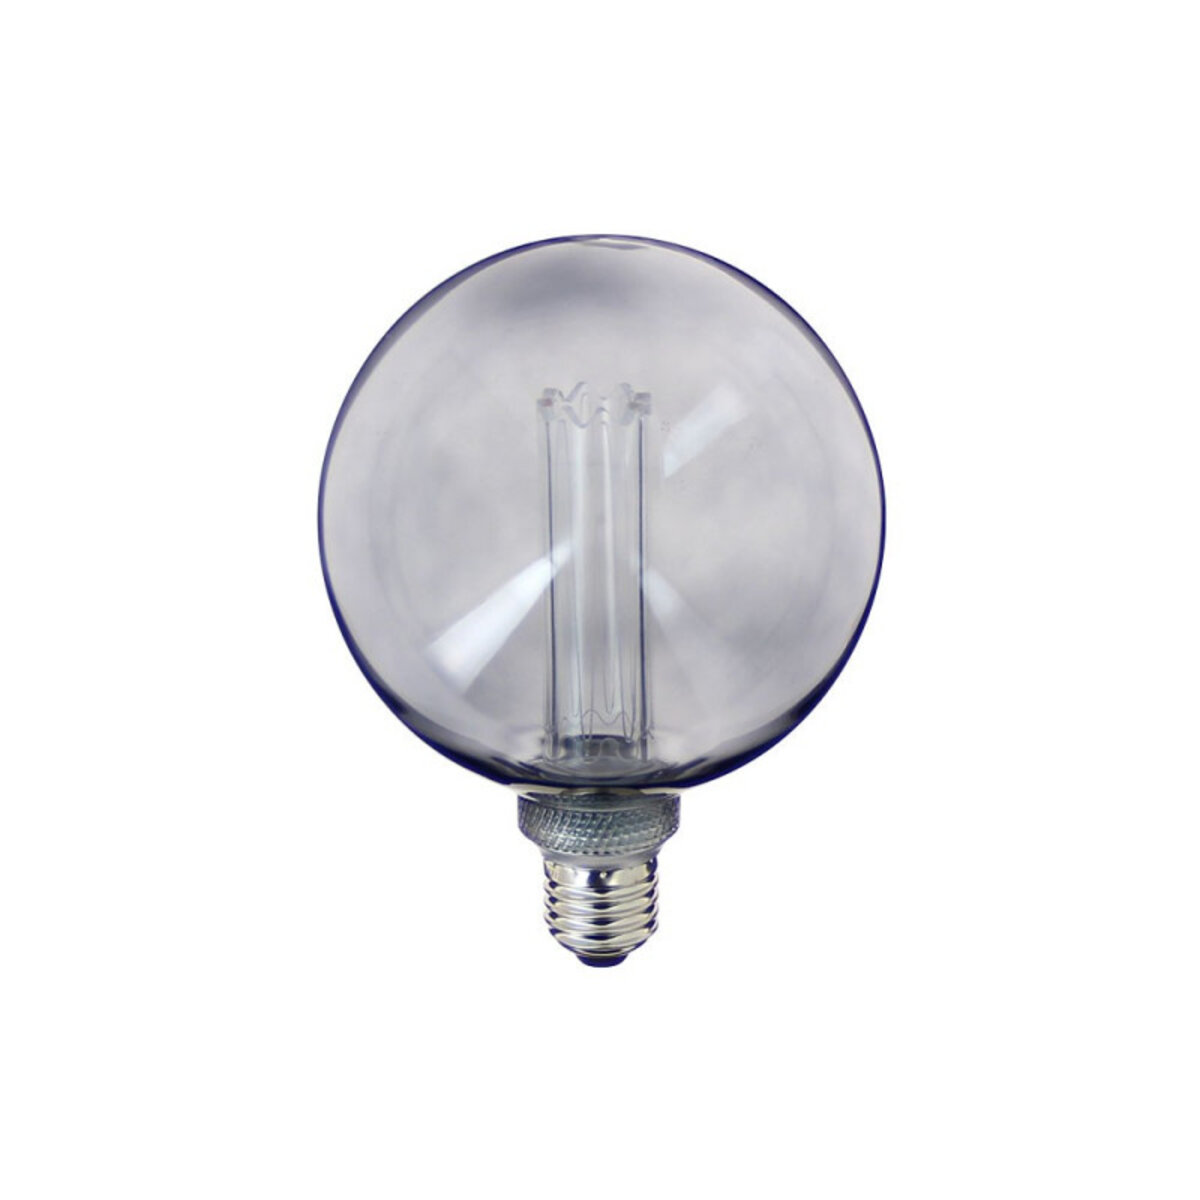 Ampoule LED pour variateur : Lux et Déco, Ampoule LED E27 8 pour